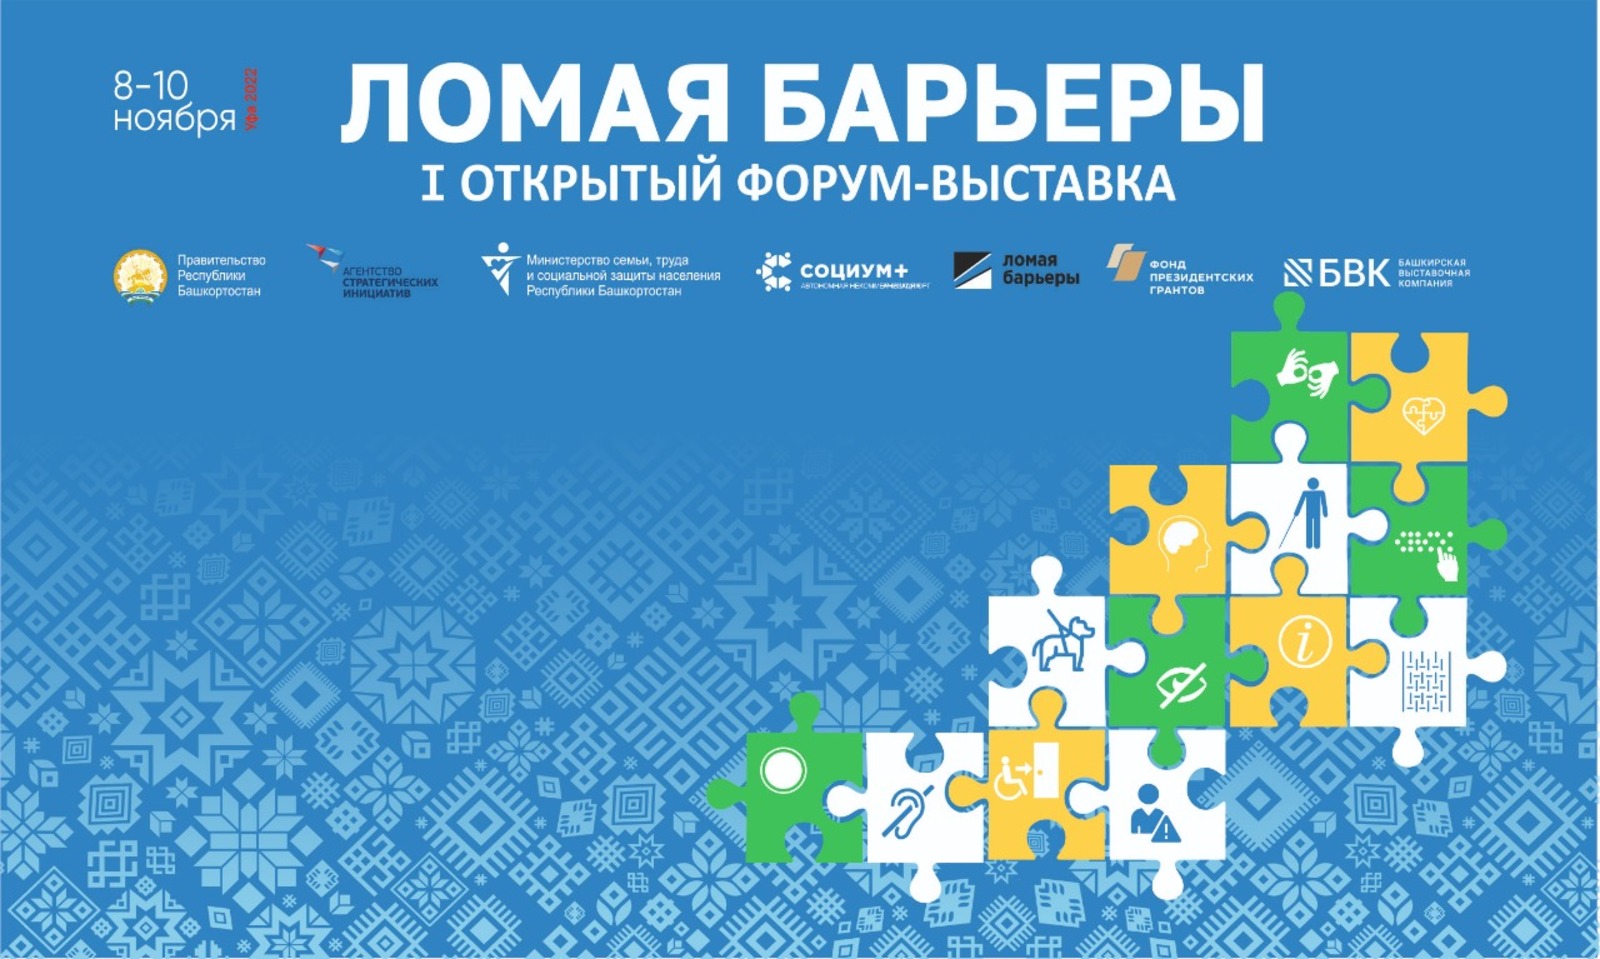 В Башкирии на форуме «Ломая барьеры» выставятся 50 предприятий производителей средств реабилитации